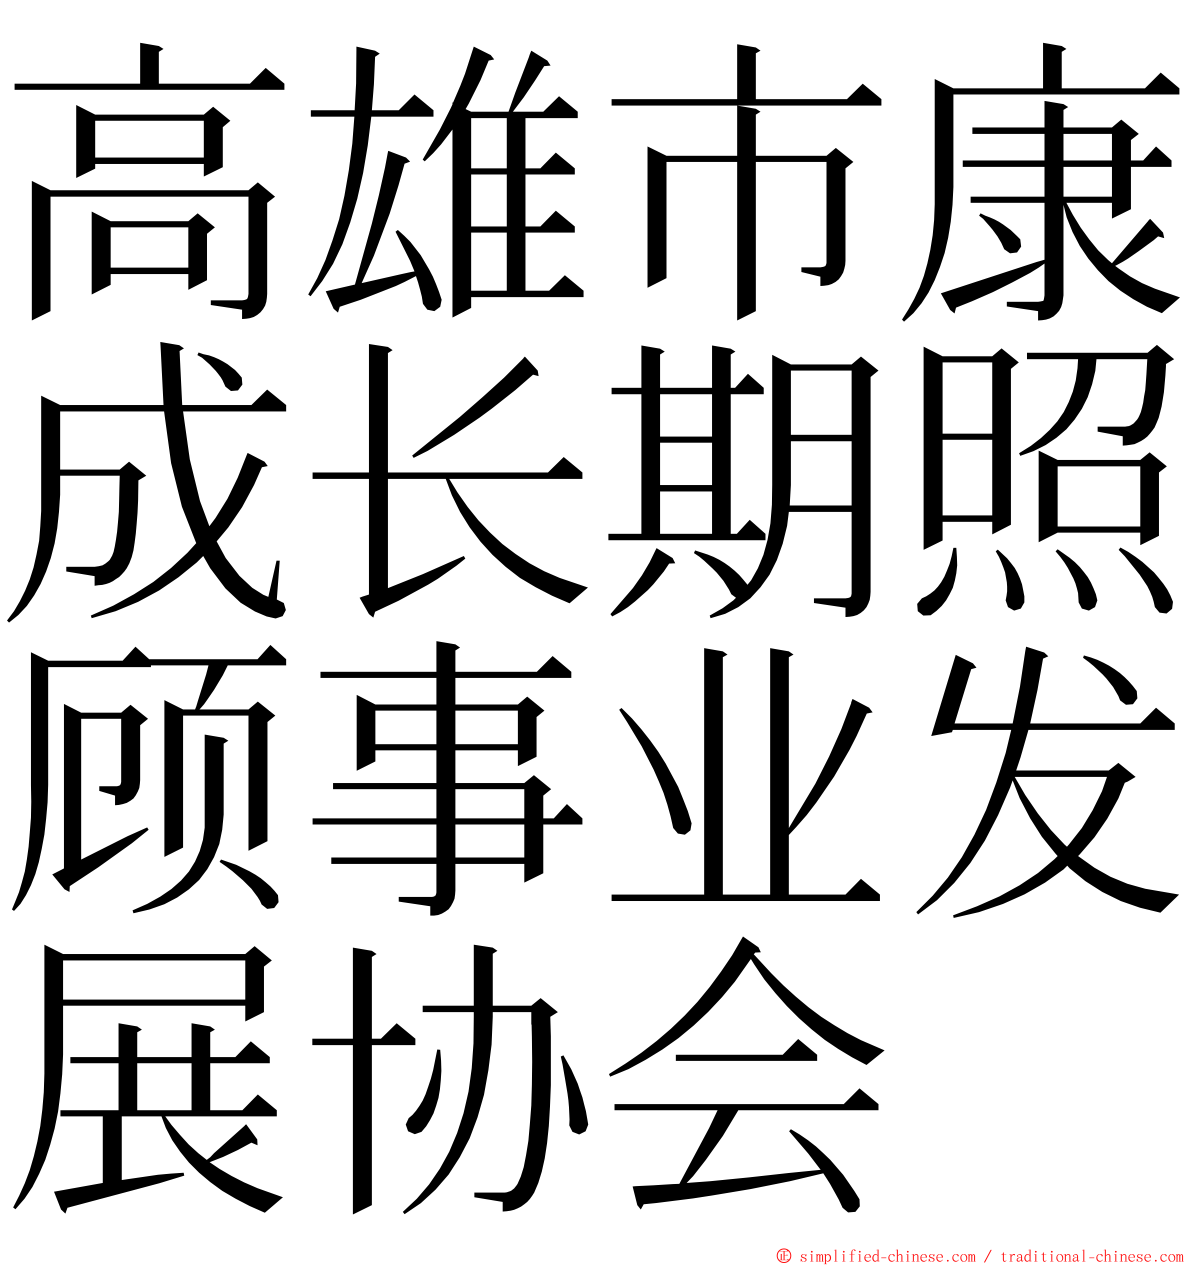 高雄市康成长期照顾事业发展协会 ming font